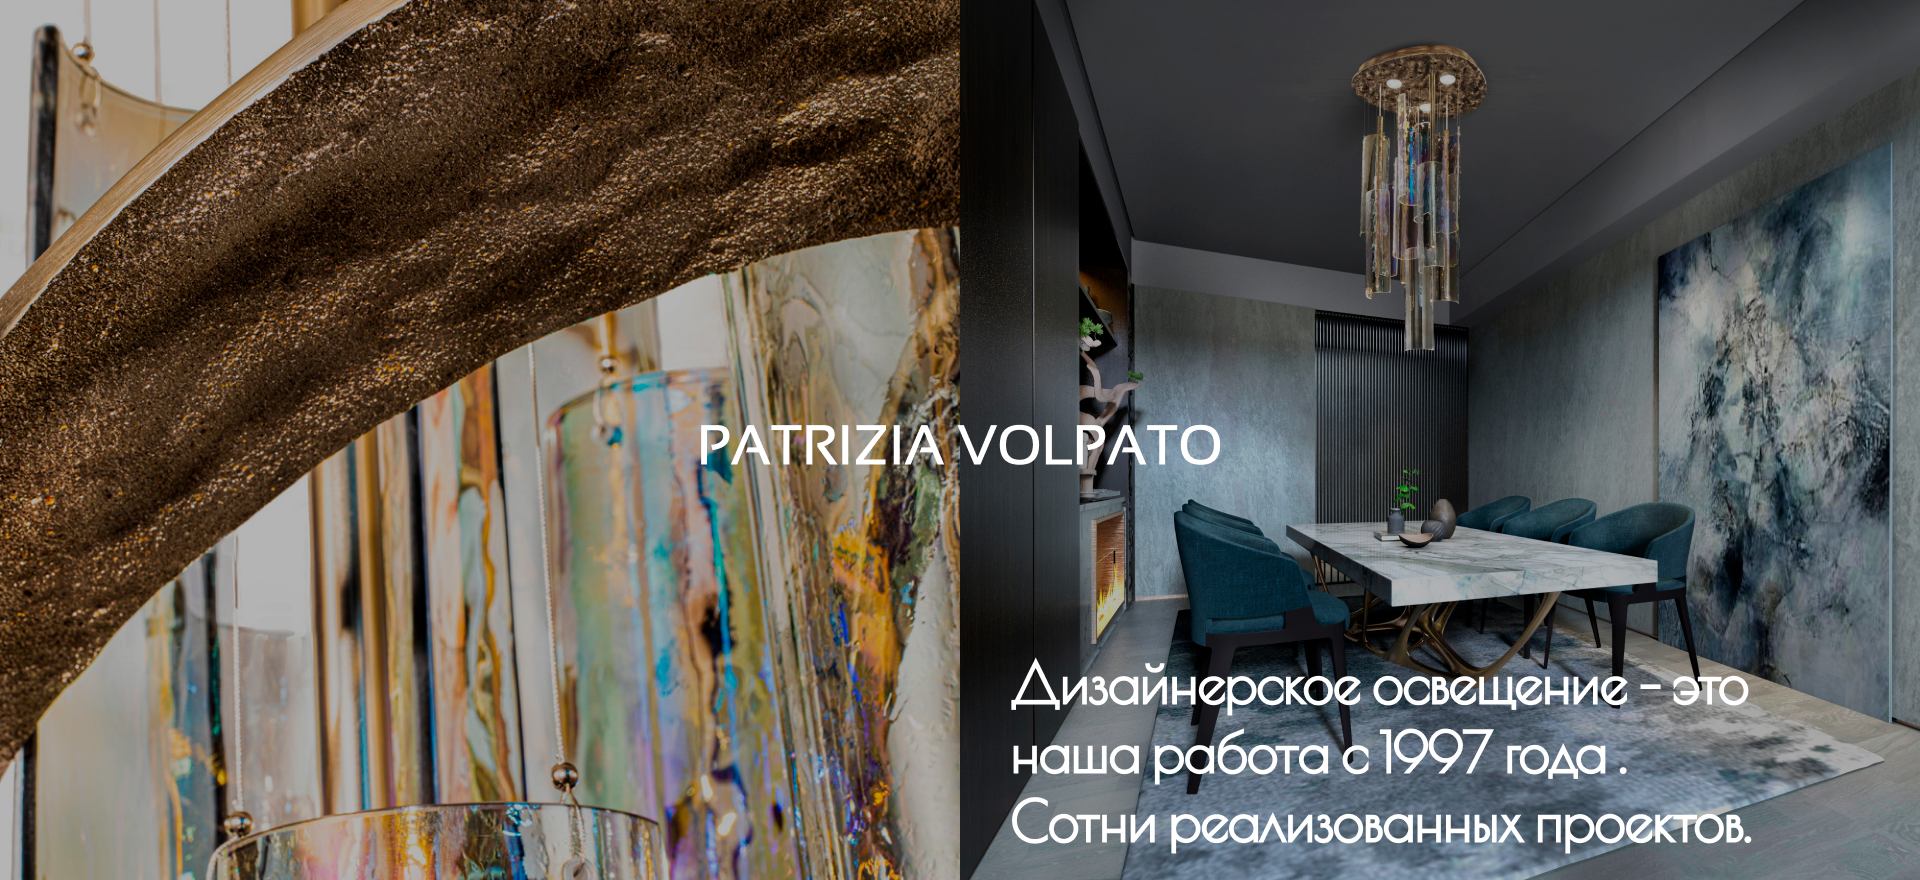 PATRIZIA_VOLPATO_new170724